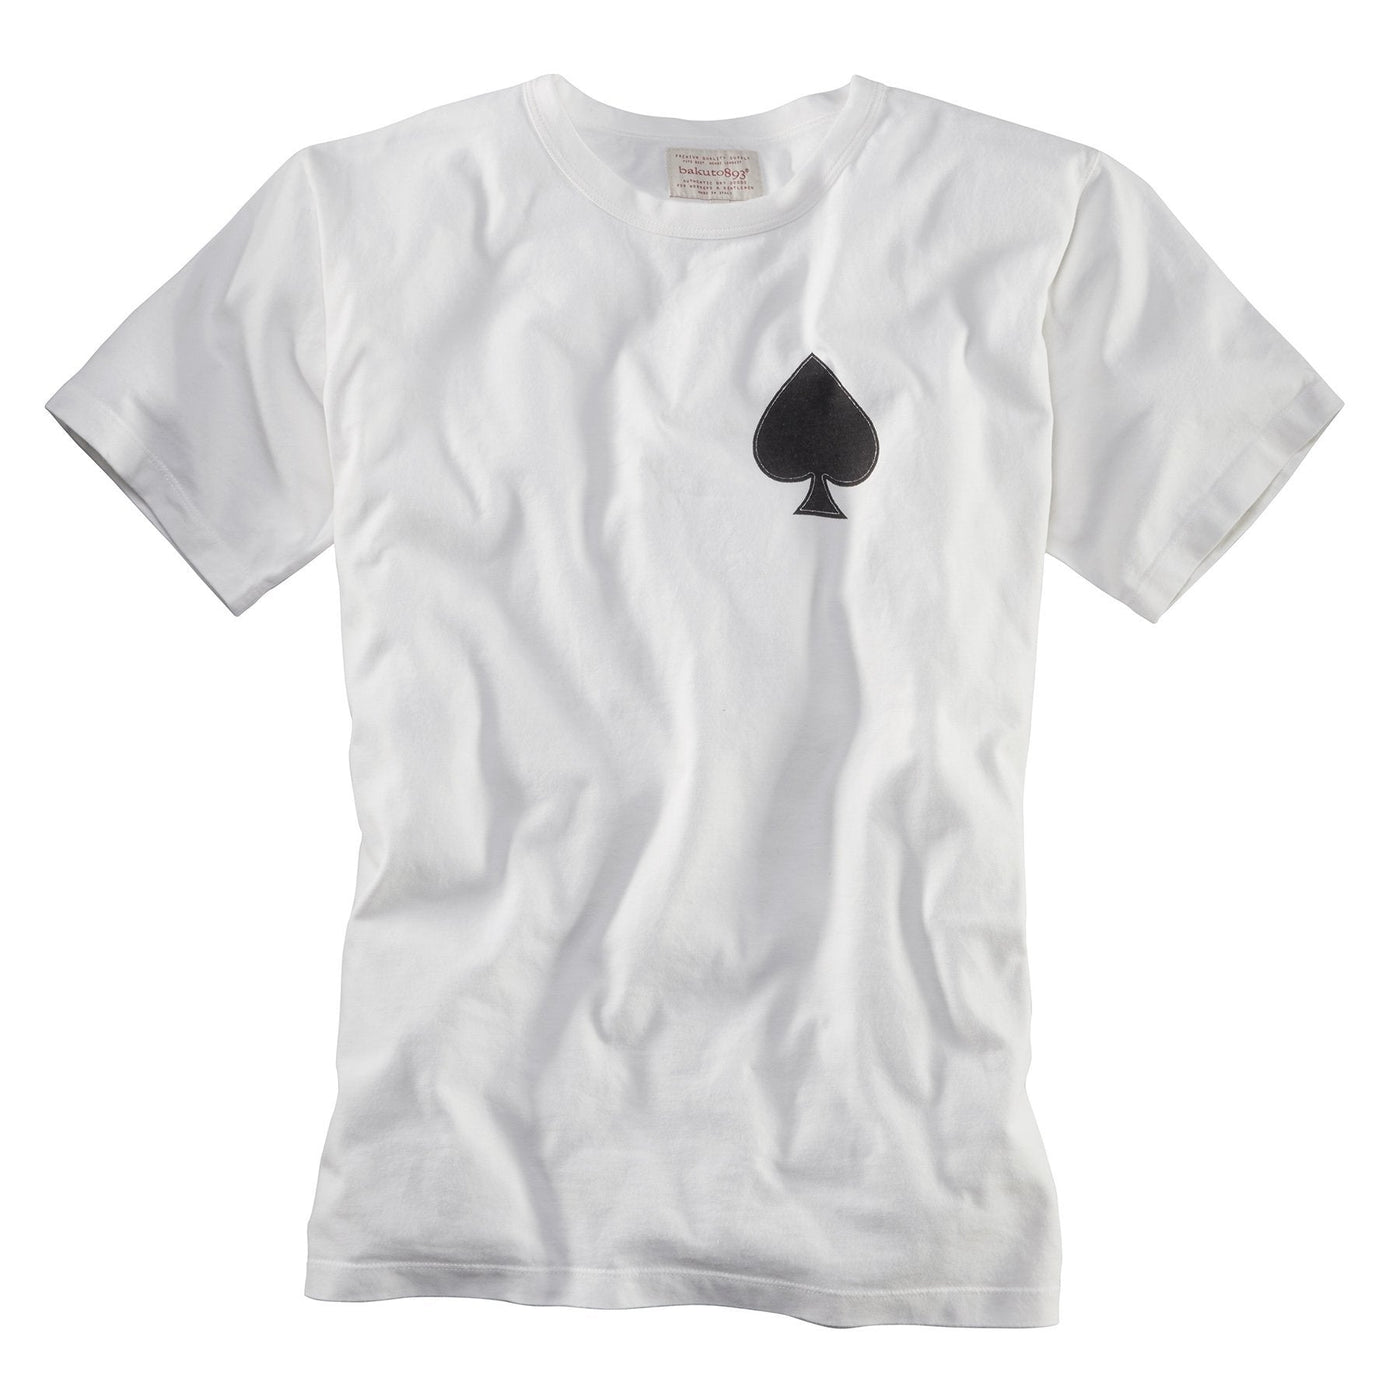 Bakuto893 T-Shirt Aces of Spades White